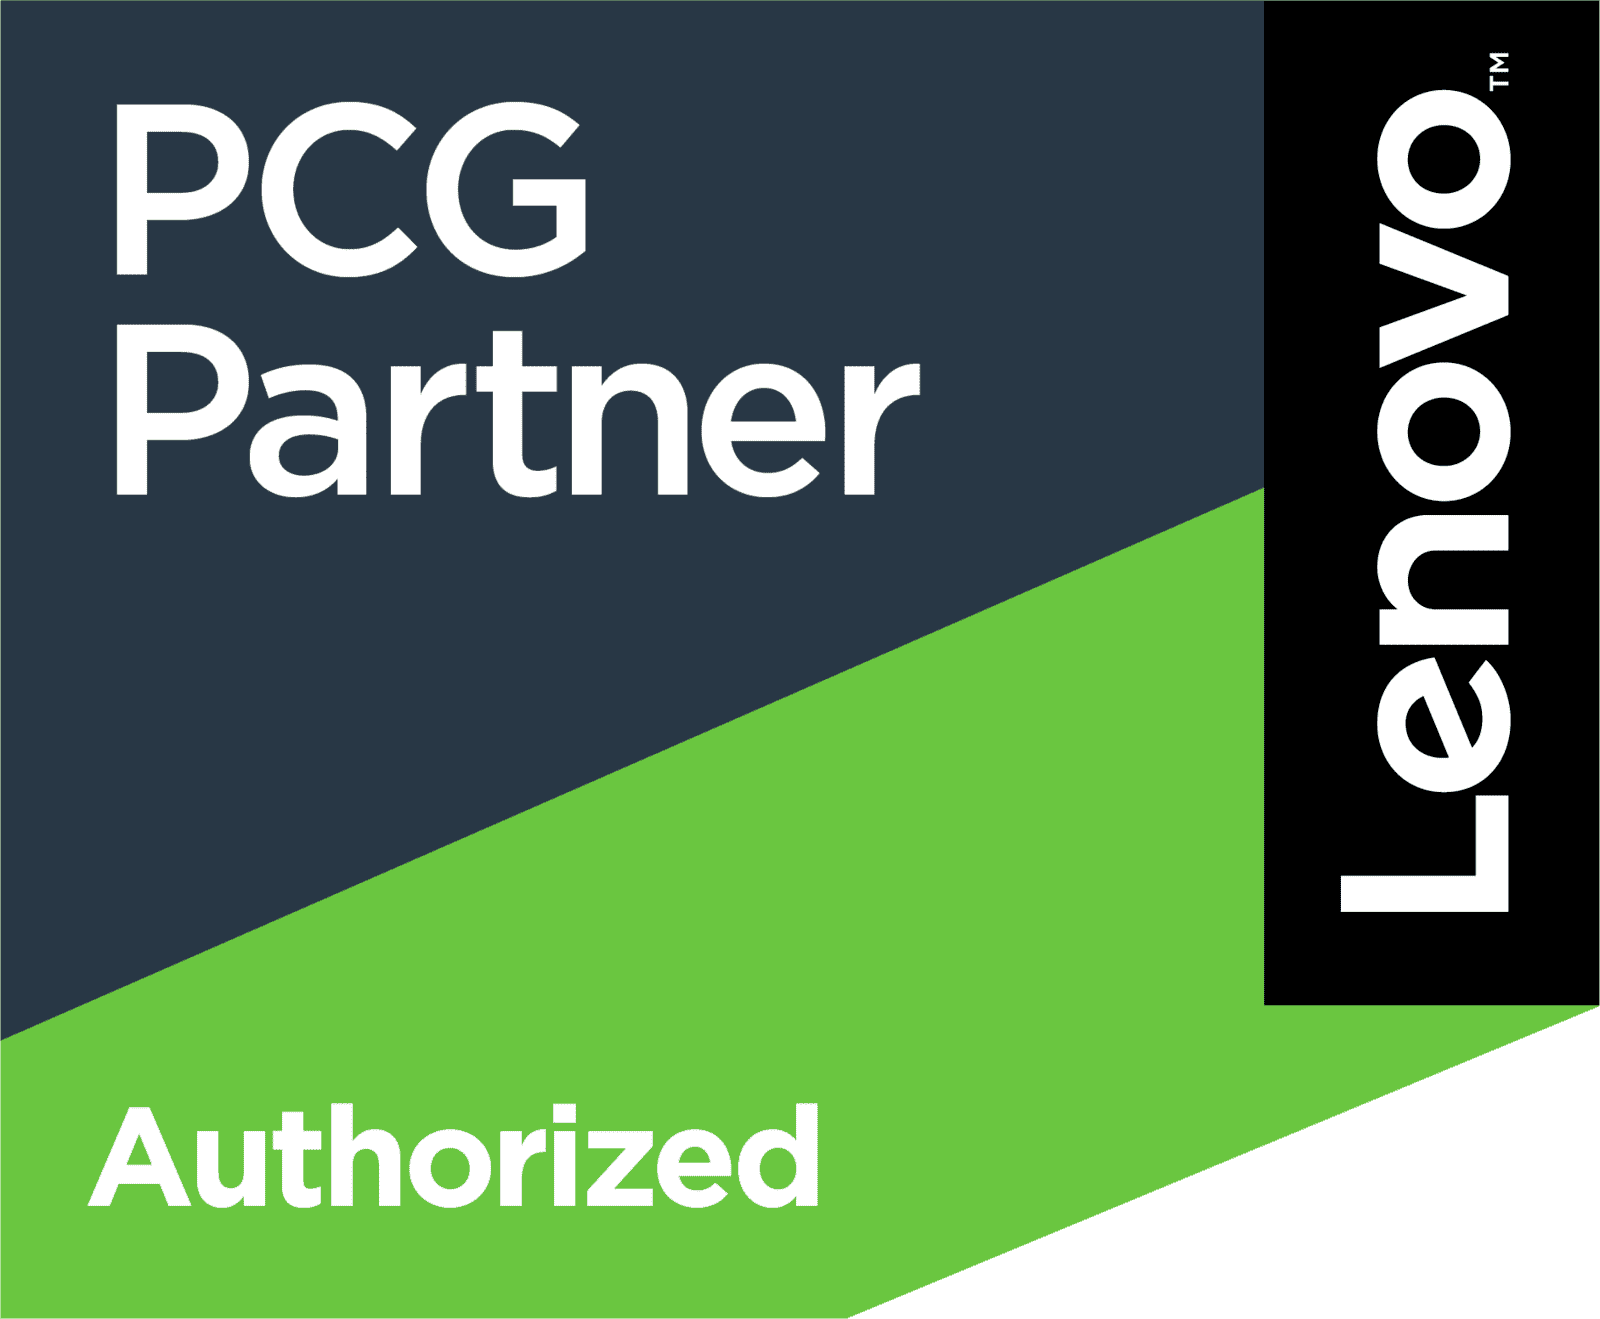 lenovo authorized partner logo in white black green and navy blue